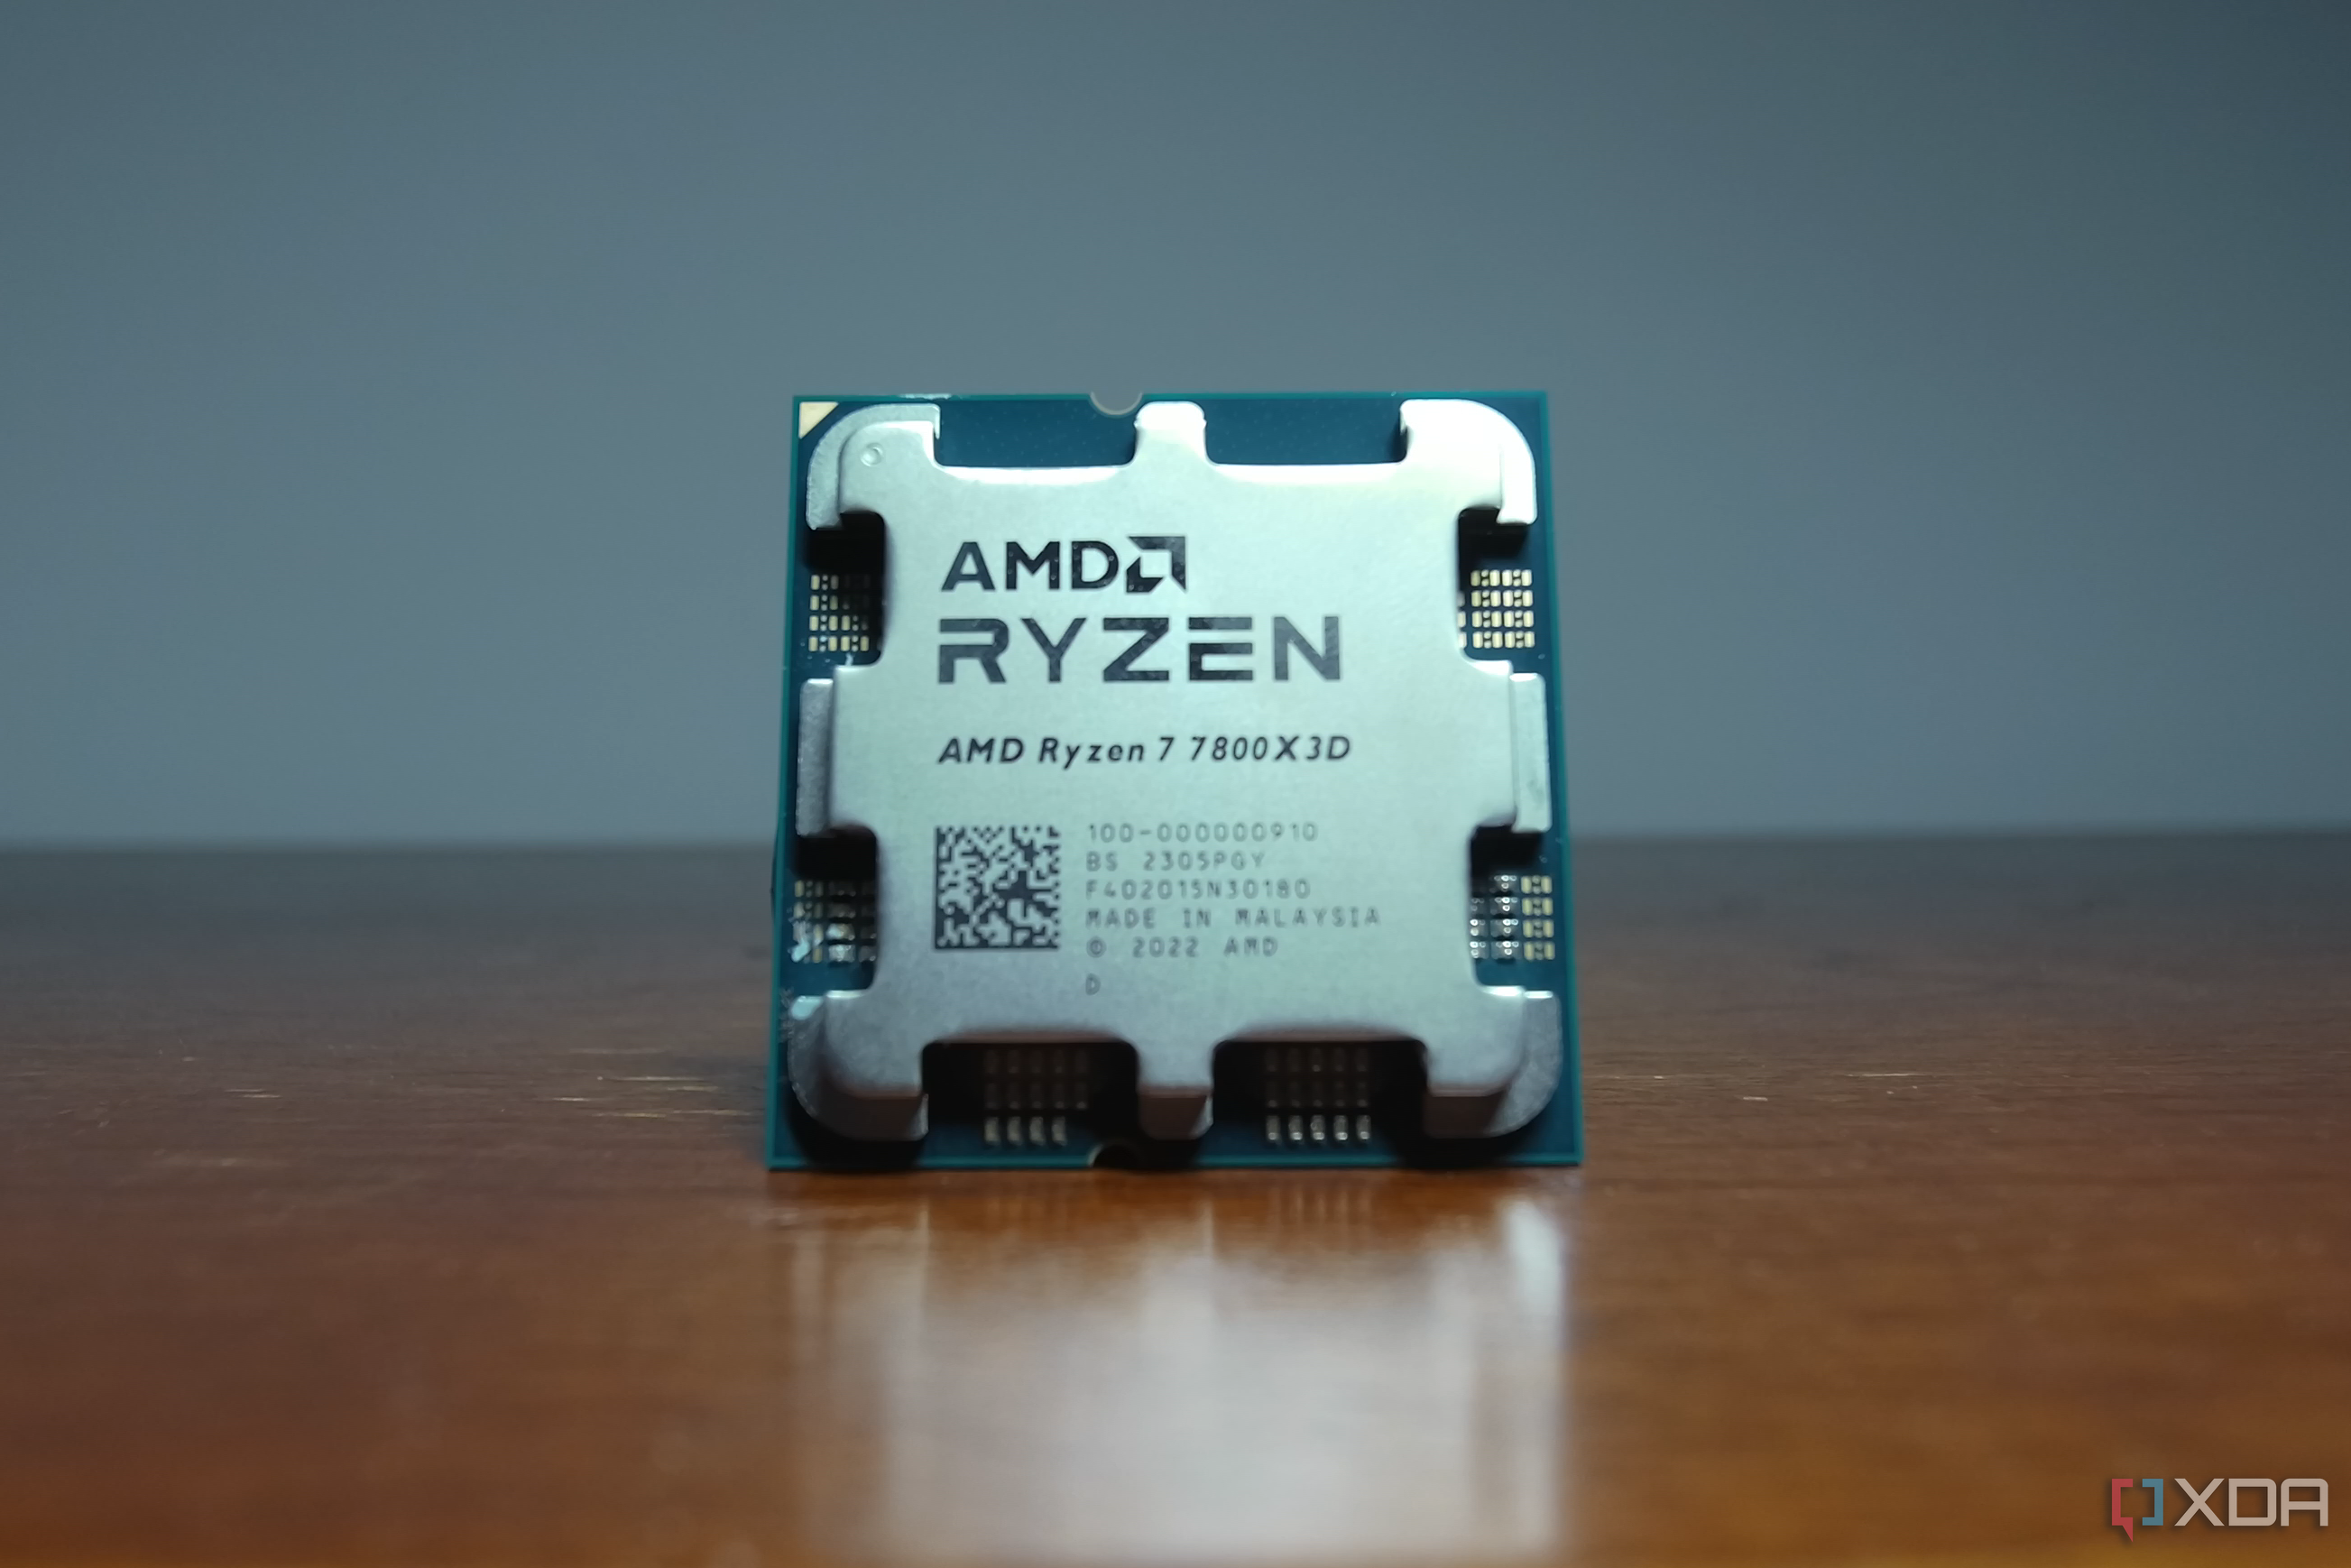 Amd 7 7800x3d купить. Ryzen 7 7800x3d. Процессор райзен 7800x3d. Плата для 7800 x3d. AMD 7800x3d OEM.